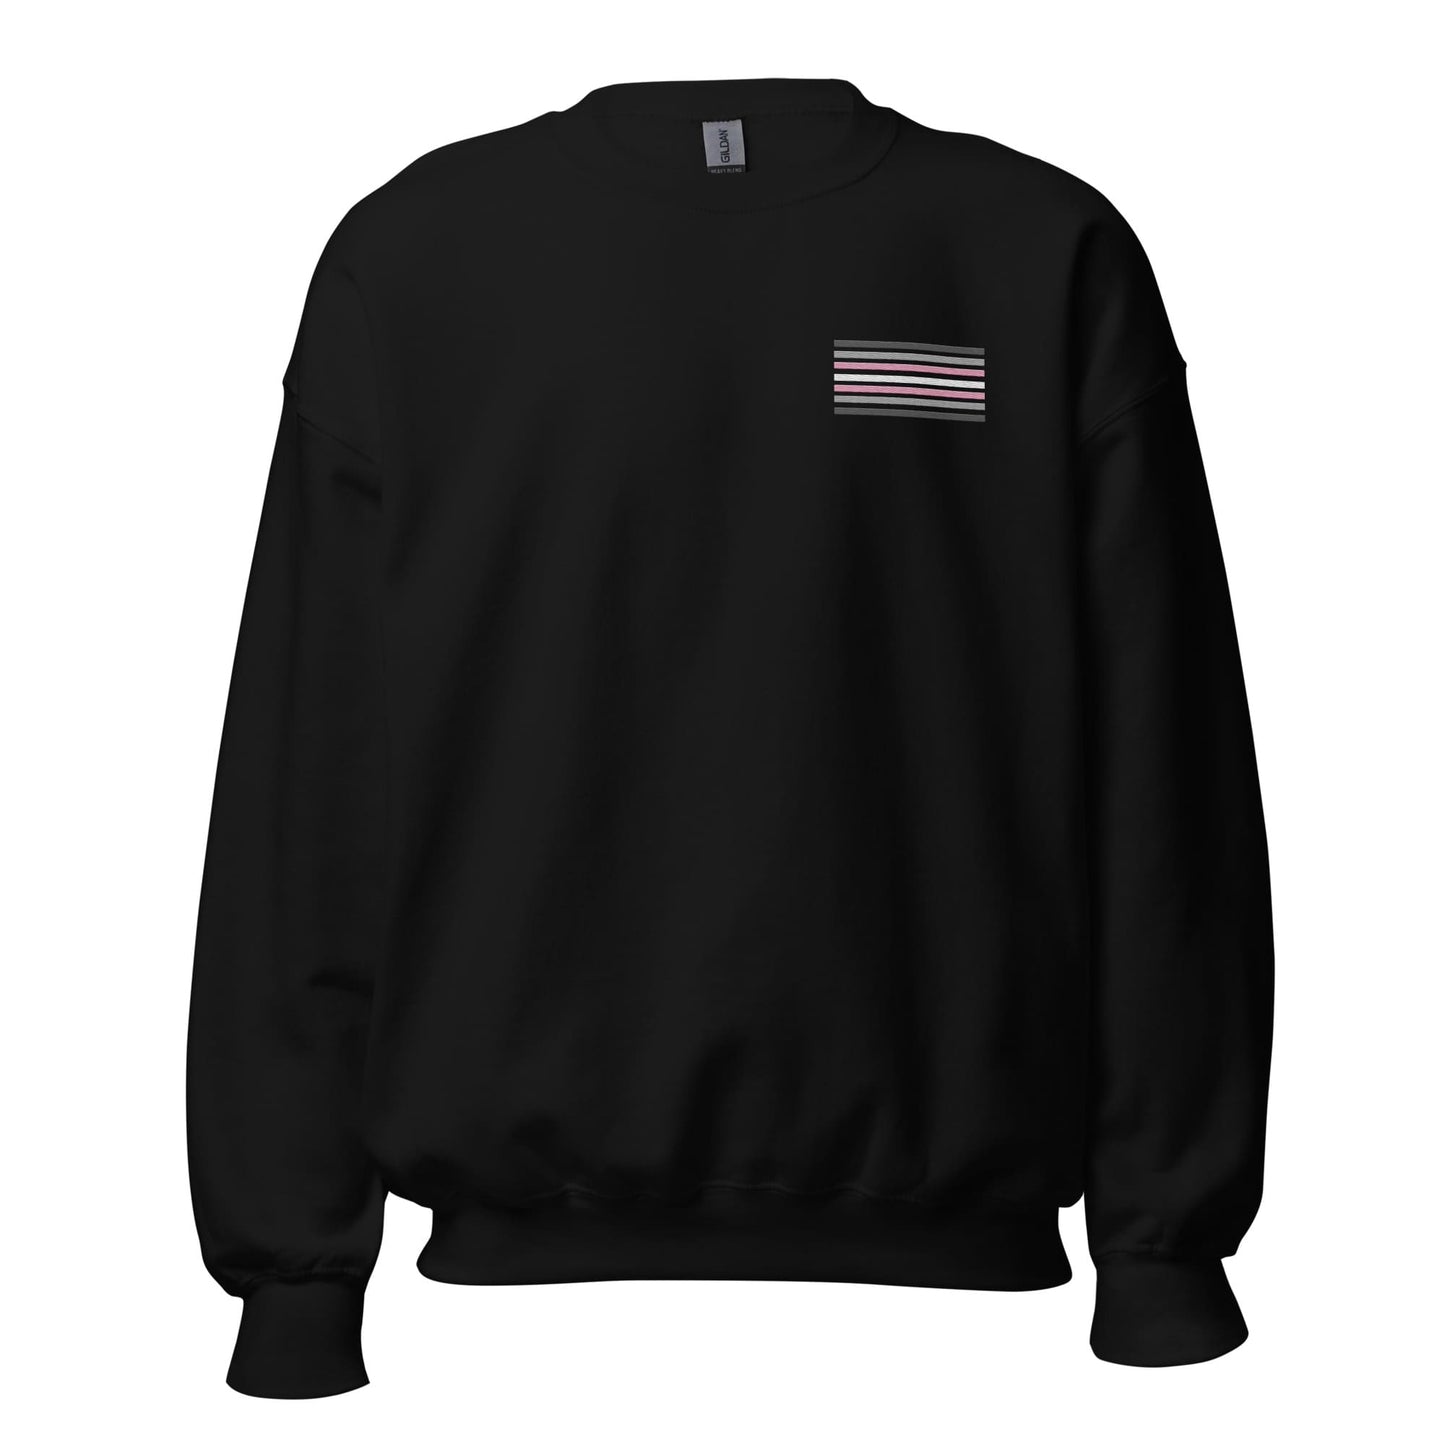 demigirl sweatshirt, subtle demigender pride flag embroidered pocket design sweater, hang